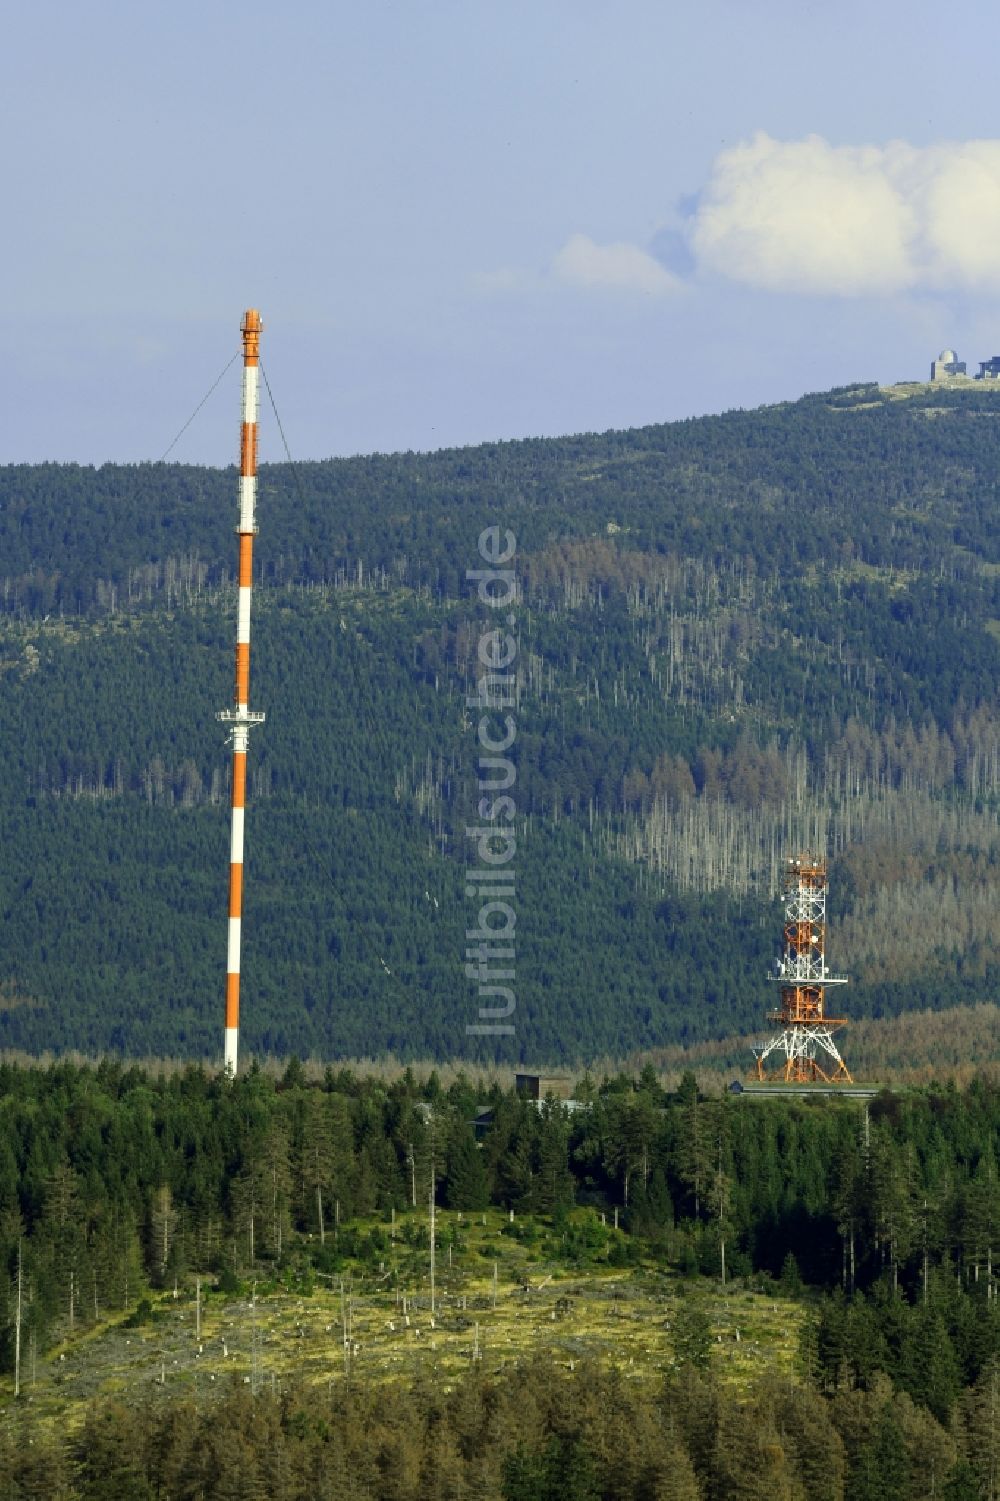 Luftaufnahme Torfhaus - Stahlmast- Funkturm und Sendeanlage als Grundnetzsender Sender Torfhaus in Torfhaus im Bundesland Niedersachsen, Deutschland